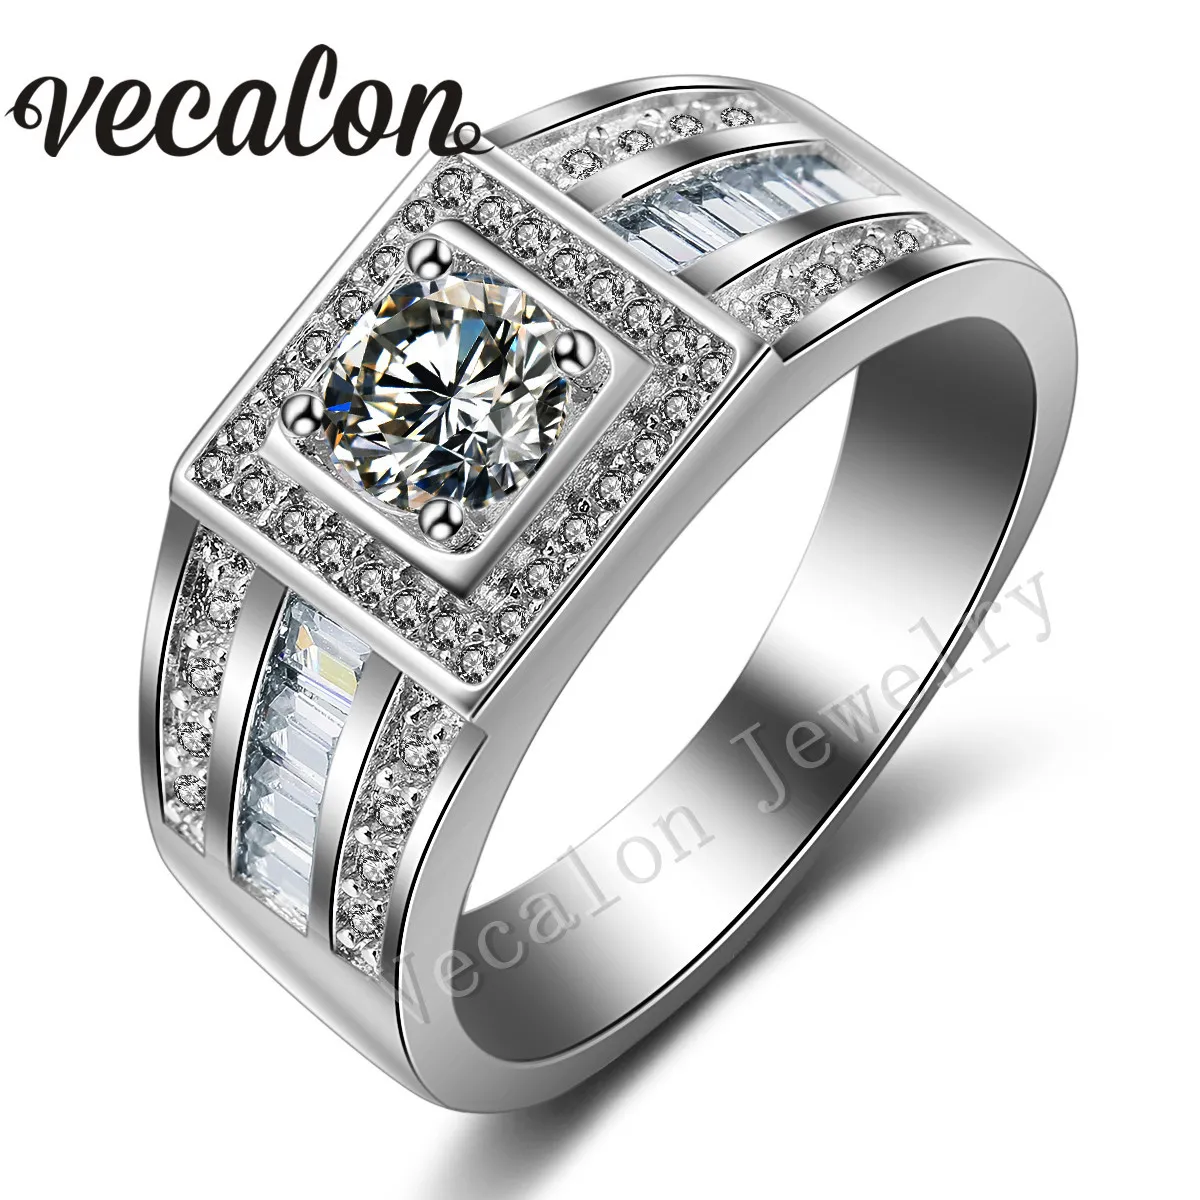 Vecalon Fashion Men Обручальное Гудовое соединение Пасьянс 1CT CZ Имитация бриллиантового кольца 10KT Белое золото наполненное обручальное кольцо для мужчин SZ 7-13